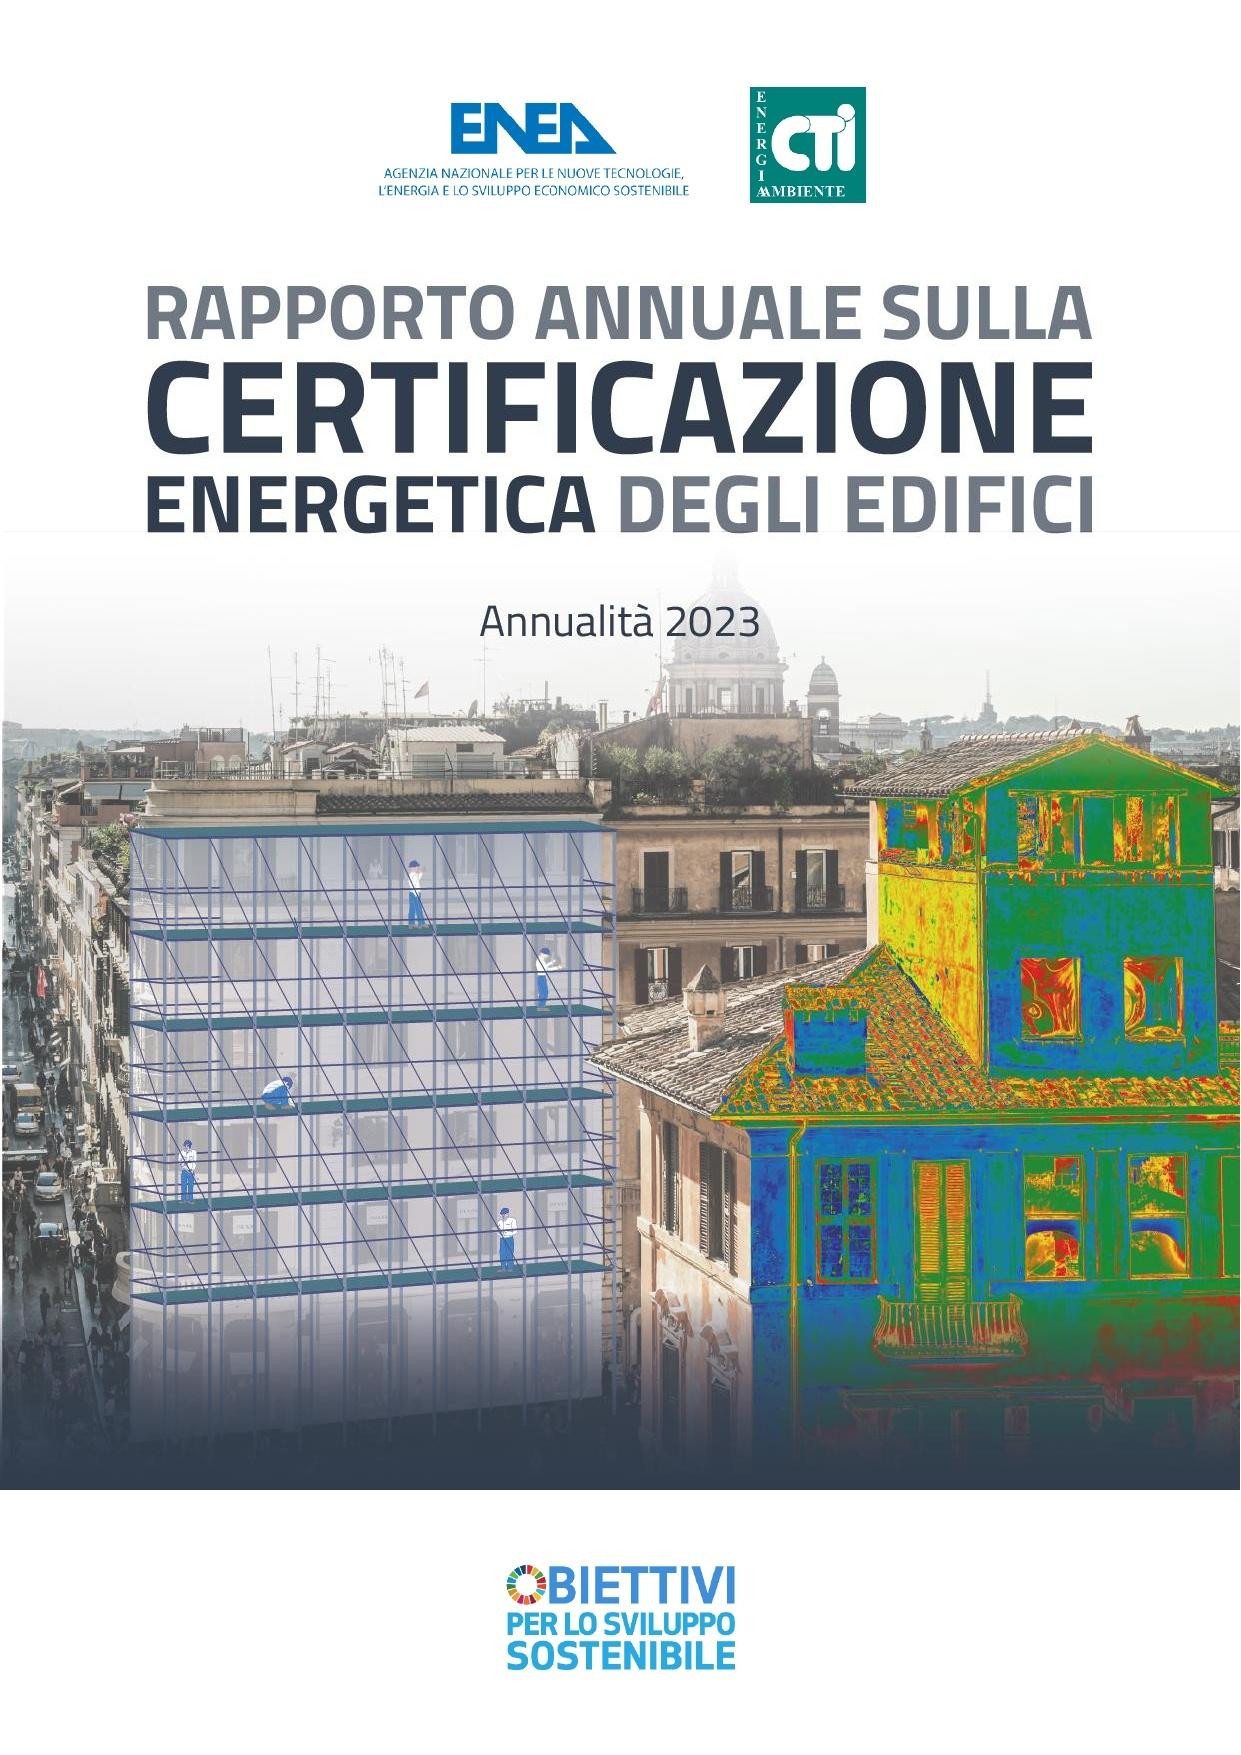 La copertina del Rapporto annuale sulla certificazione energetica degli edifici 2023 sormontata dai loghi ENEA e CTI